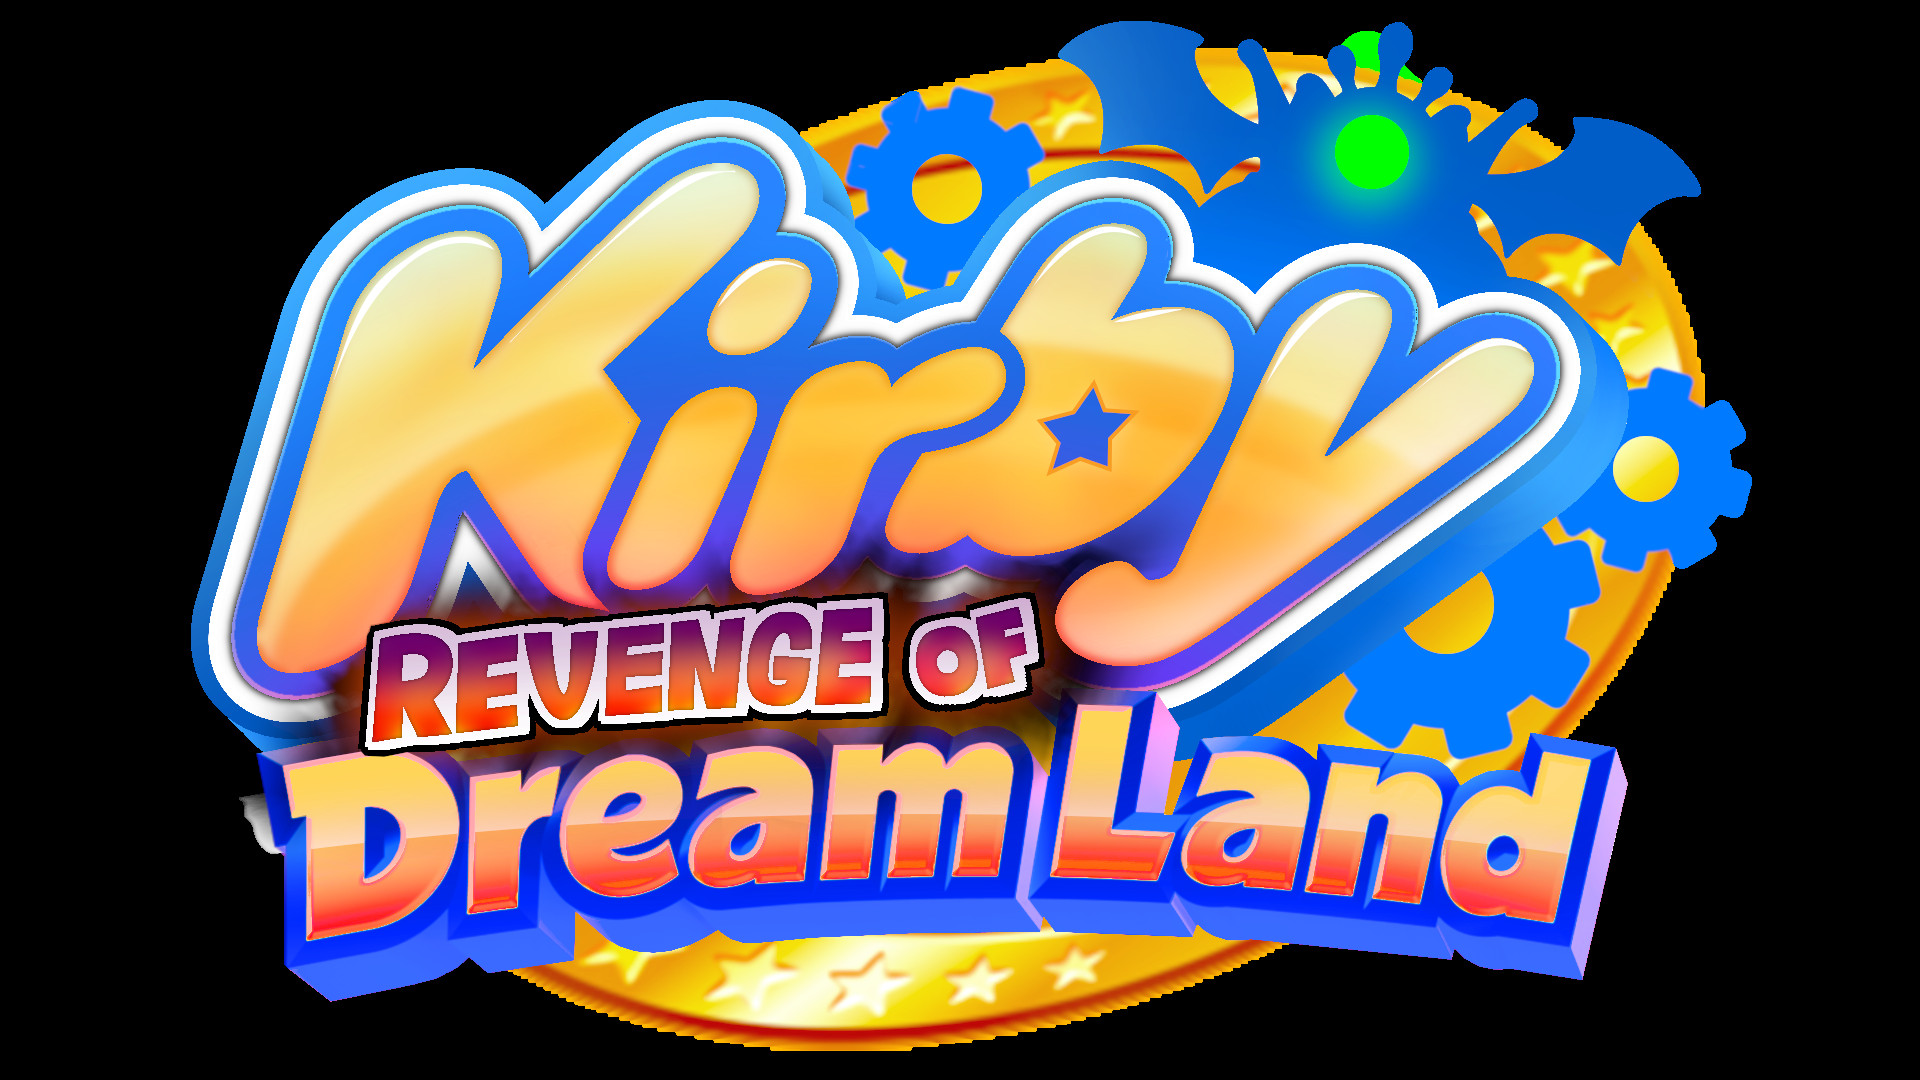 Кирби Return to Dreamland. Kirby Wii. Kirby's Revenge of Dreamland. Kirby Returns to Dreamland.